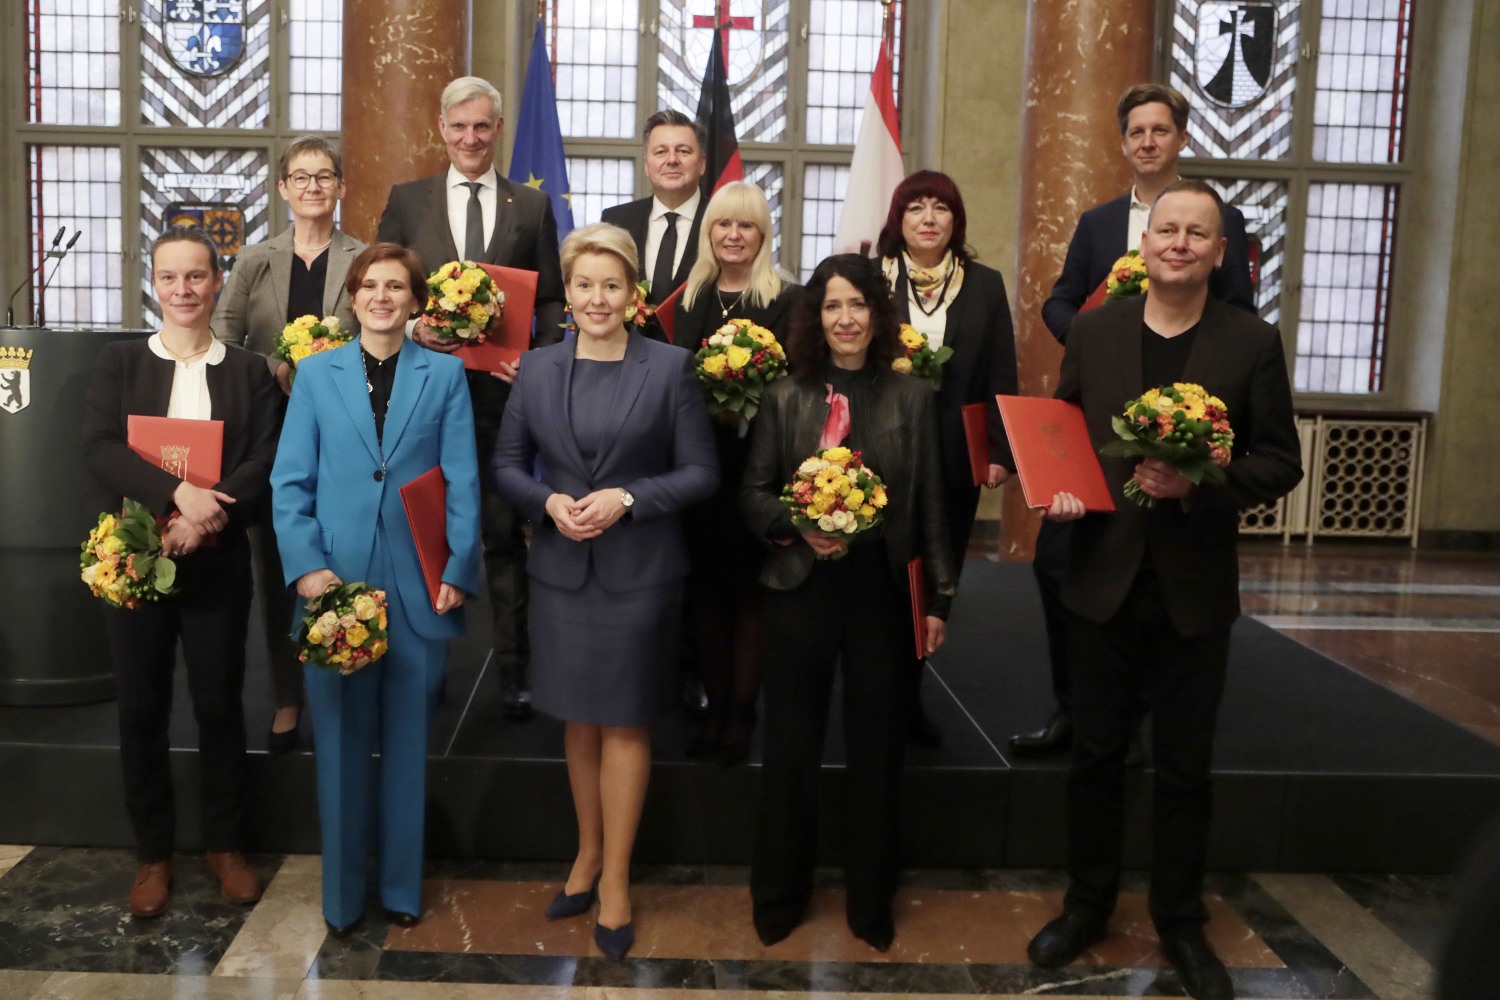 Die Mitglieder des Senats nach deren Ernennung durch die Regierende Bürgermeisterin Franziska Giffey im Wappensaal im Roten Rathaus